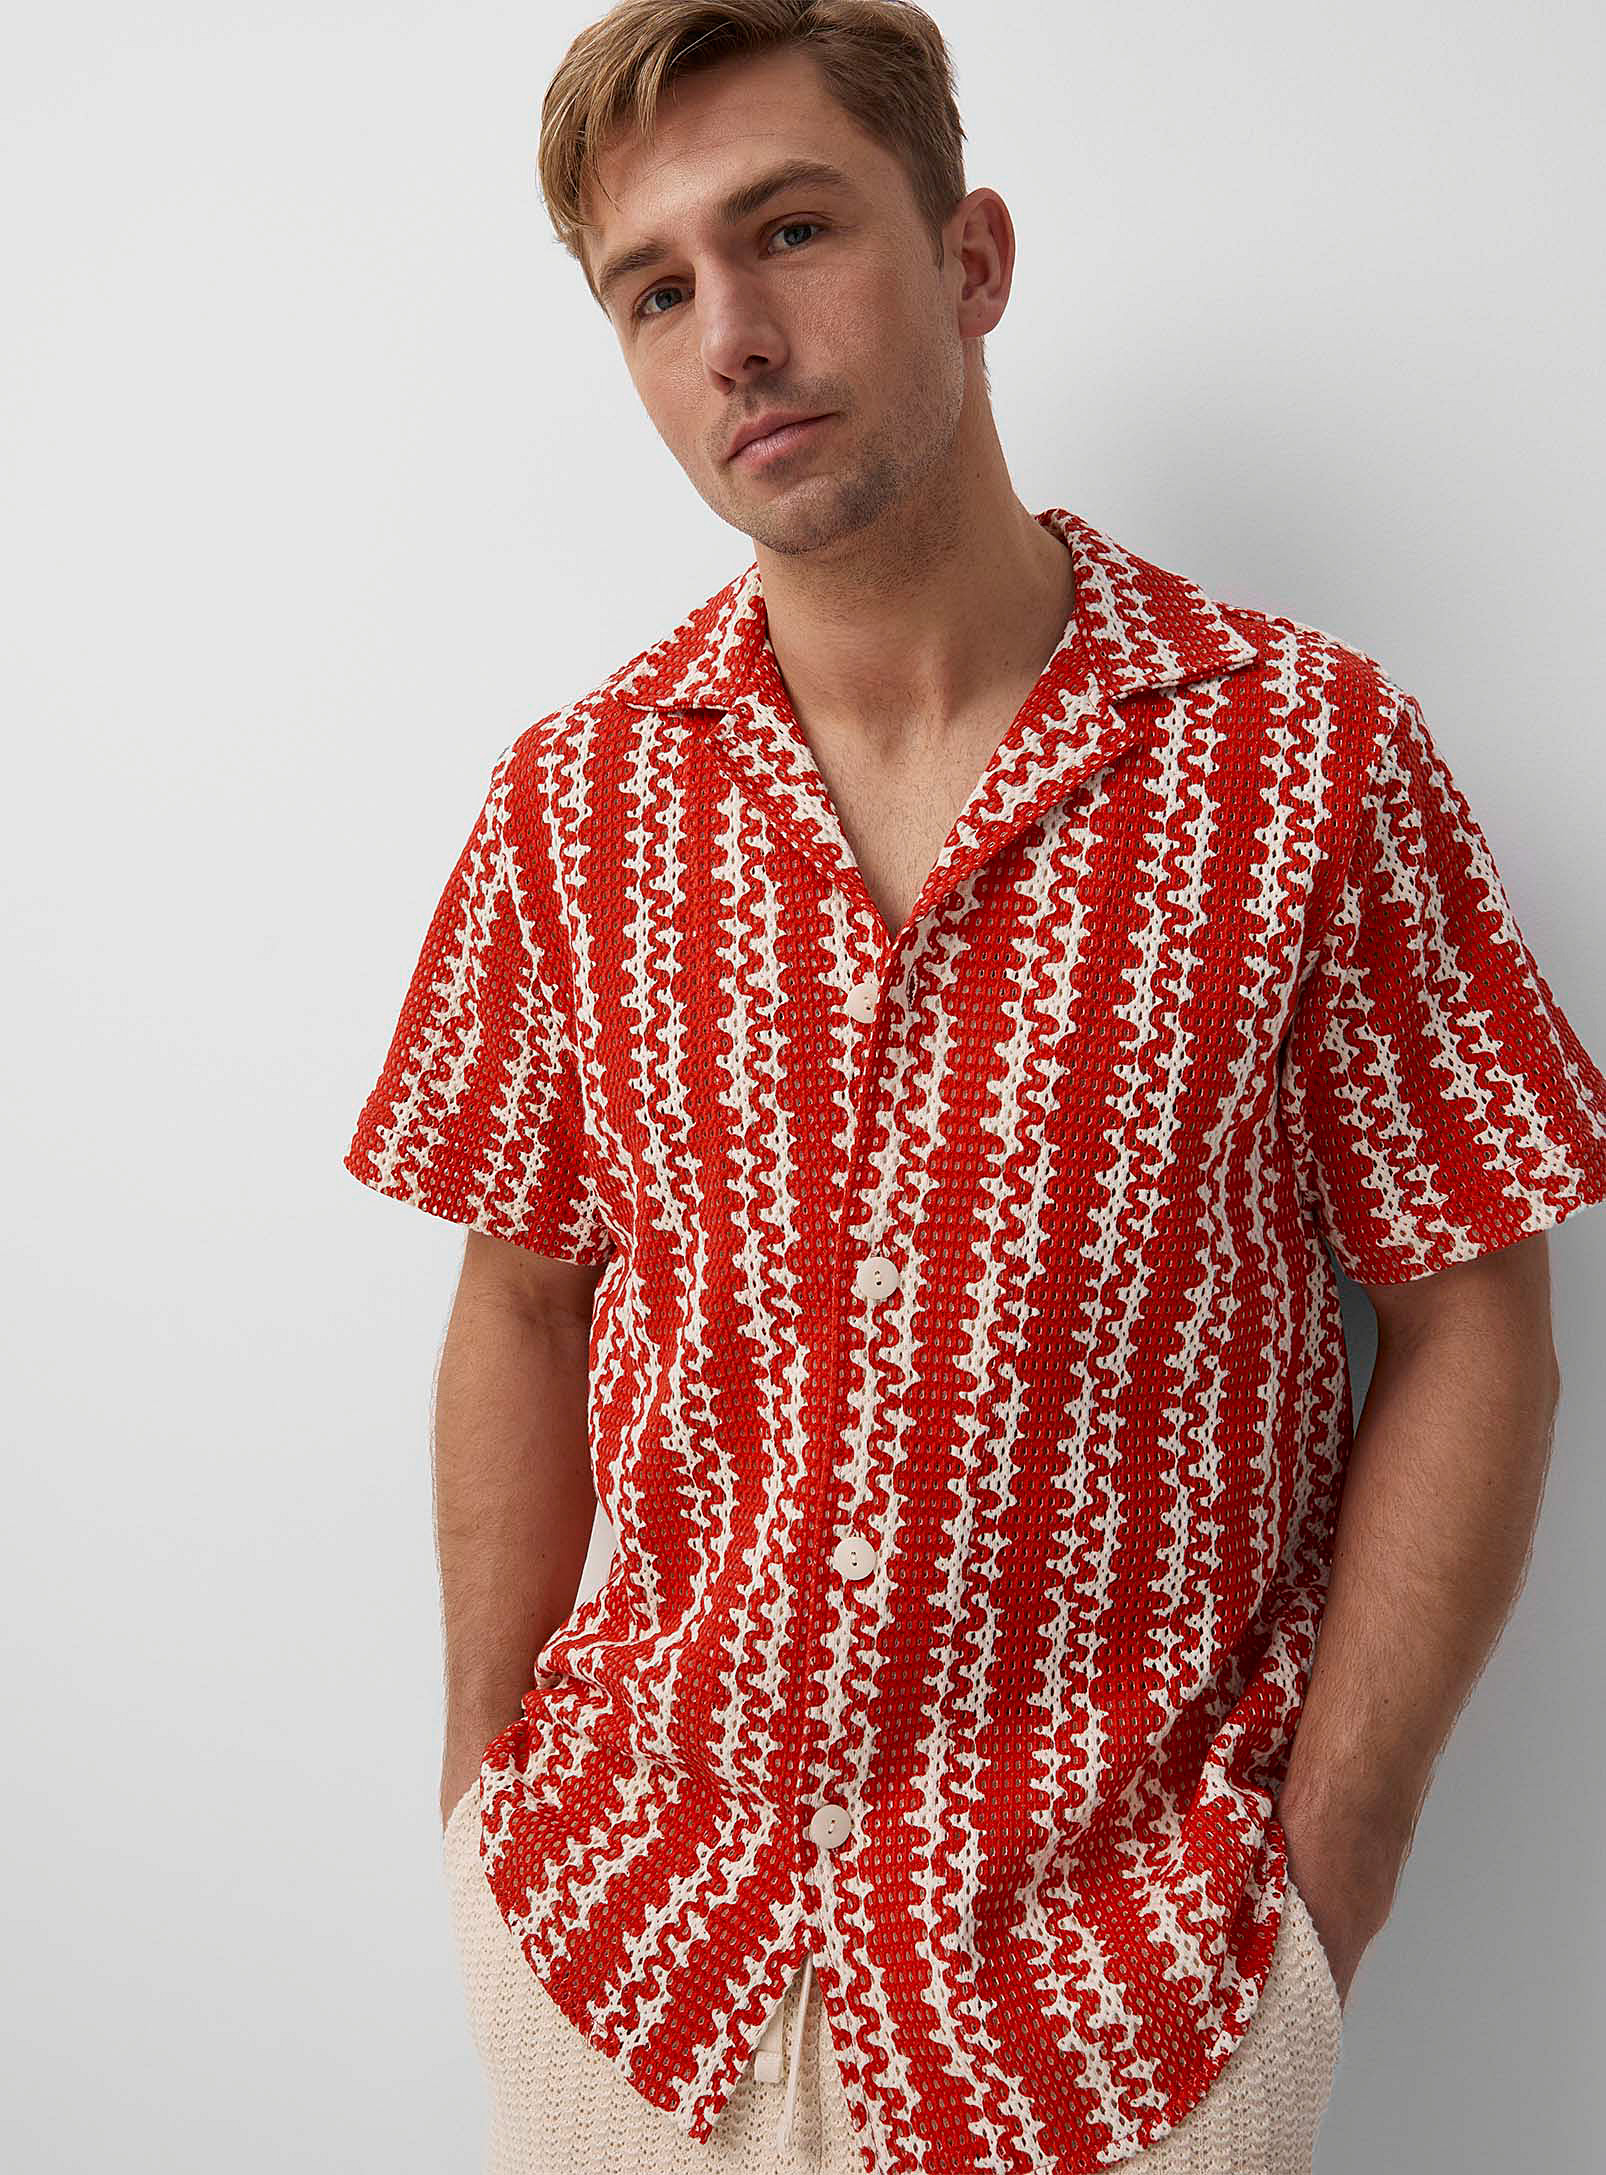 Oas - La chemise tricot imprimée rayures vagues